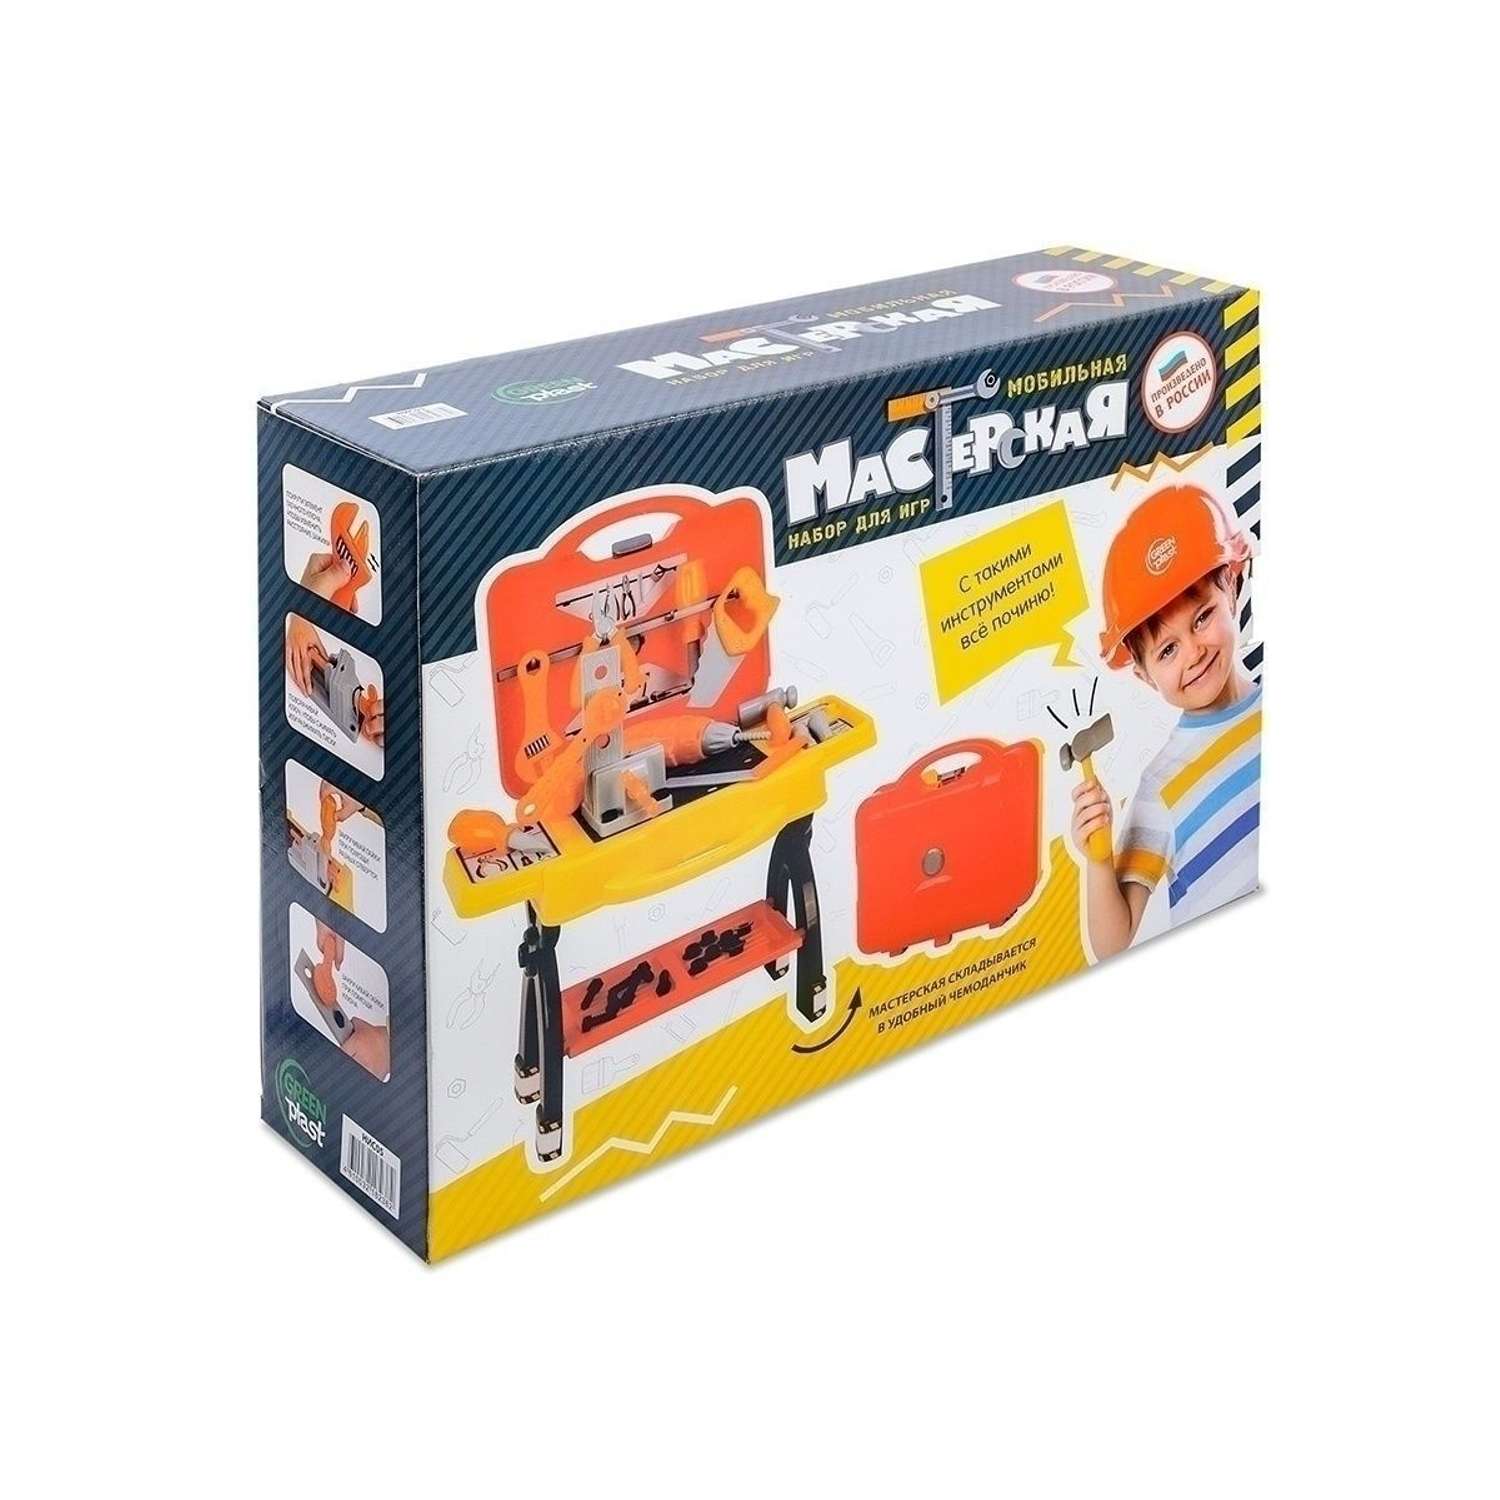 Игровой набор детский Green Plast игрушечные инструменты Мобильная мастерская для мальчика - фото 8